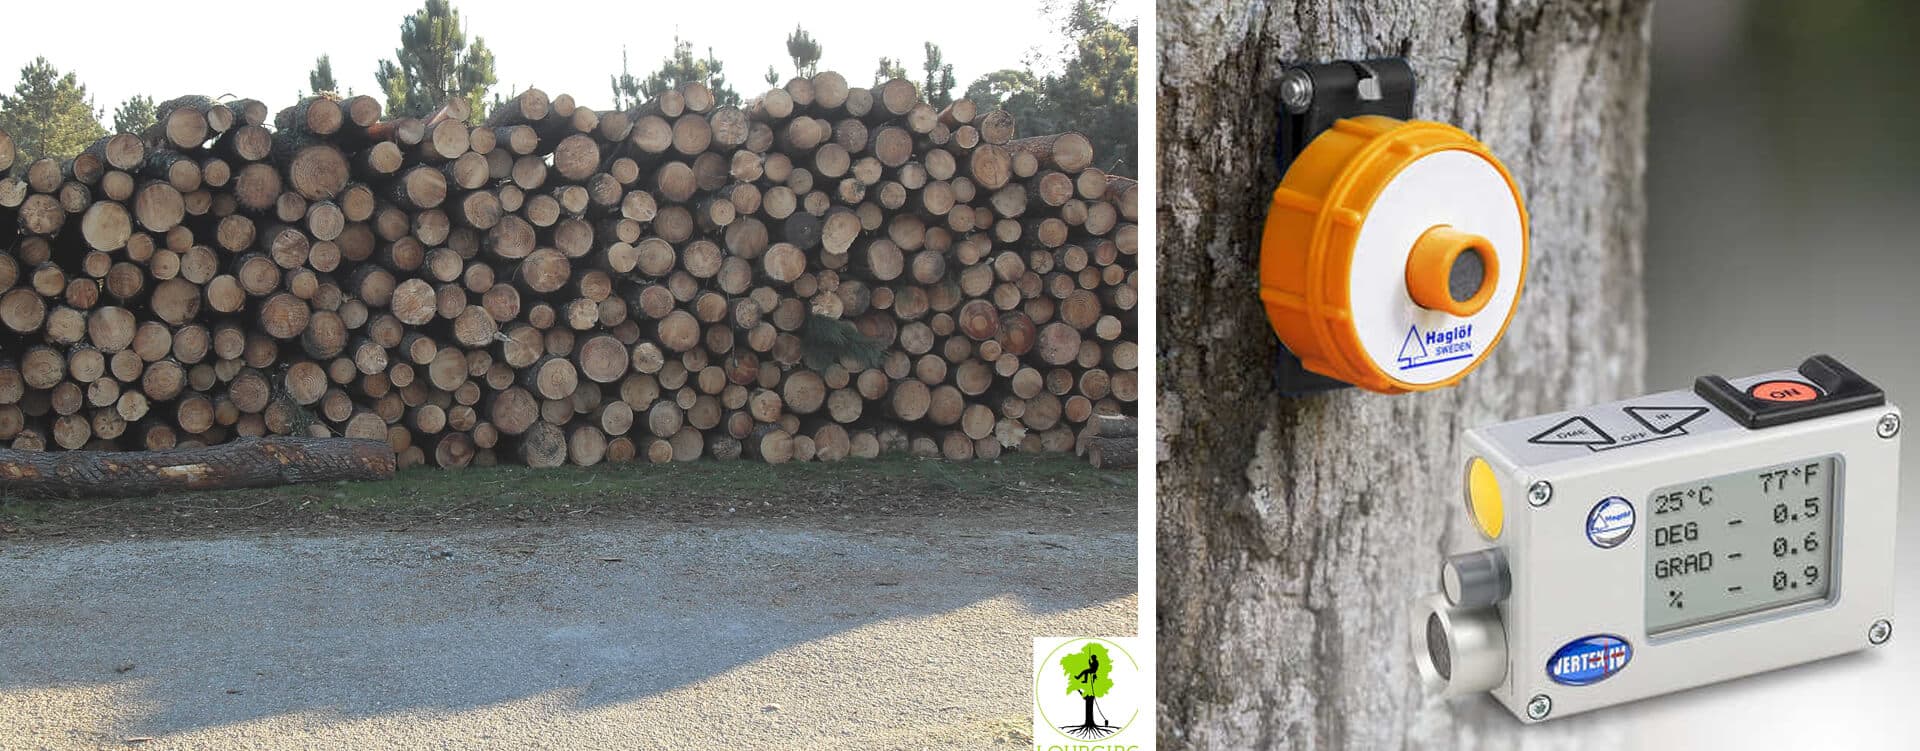  Cubicación y tasación de árboles y madera en pie